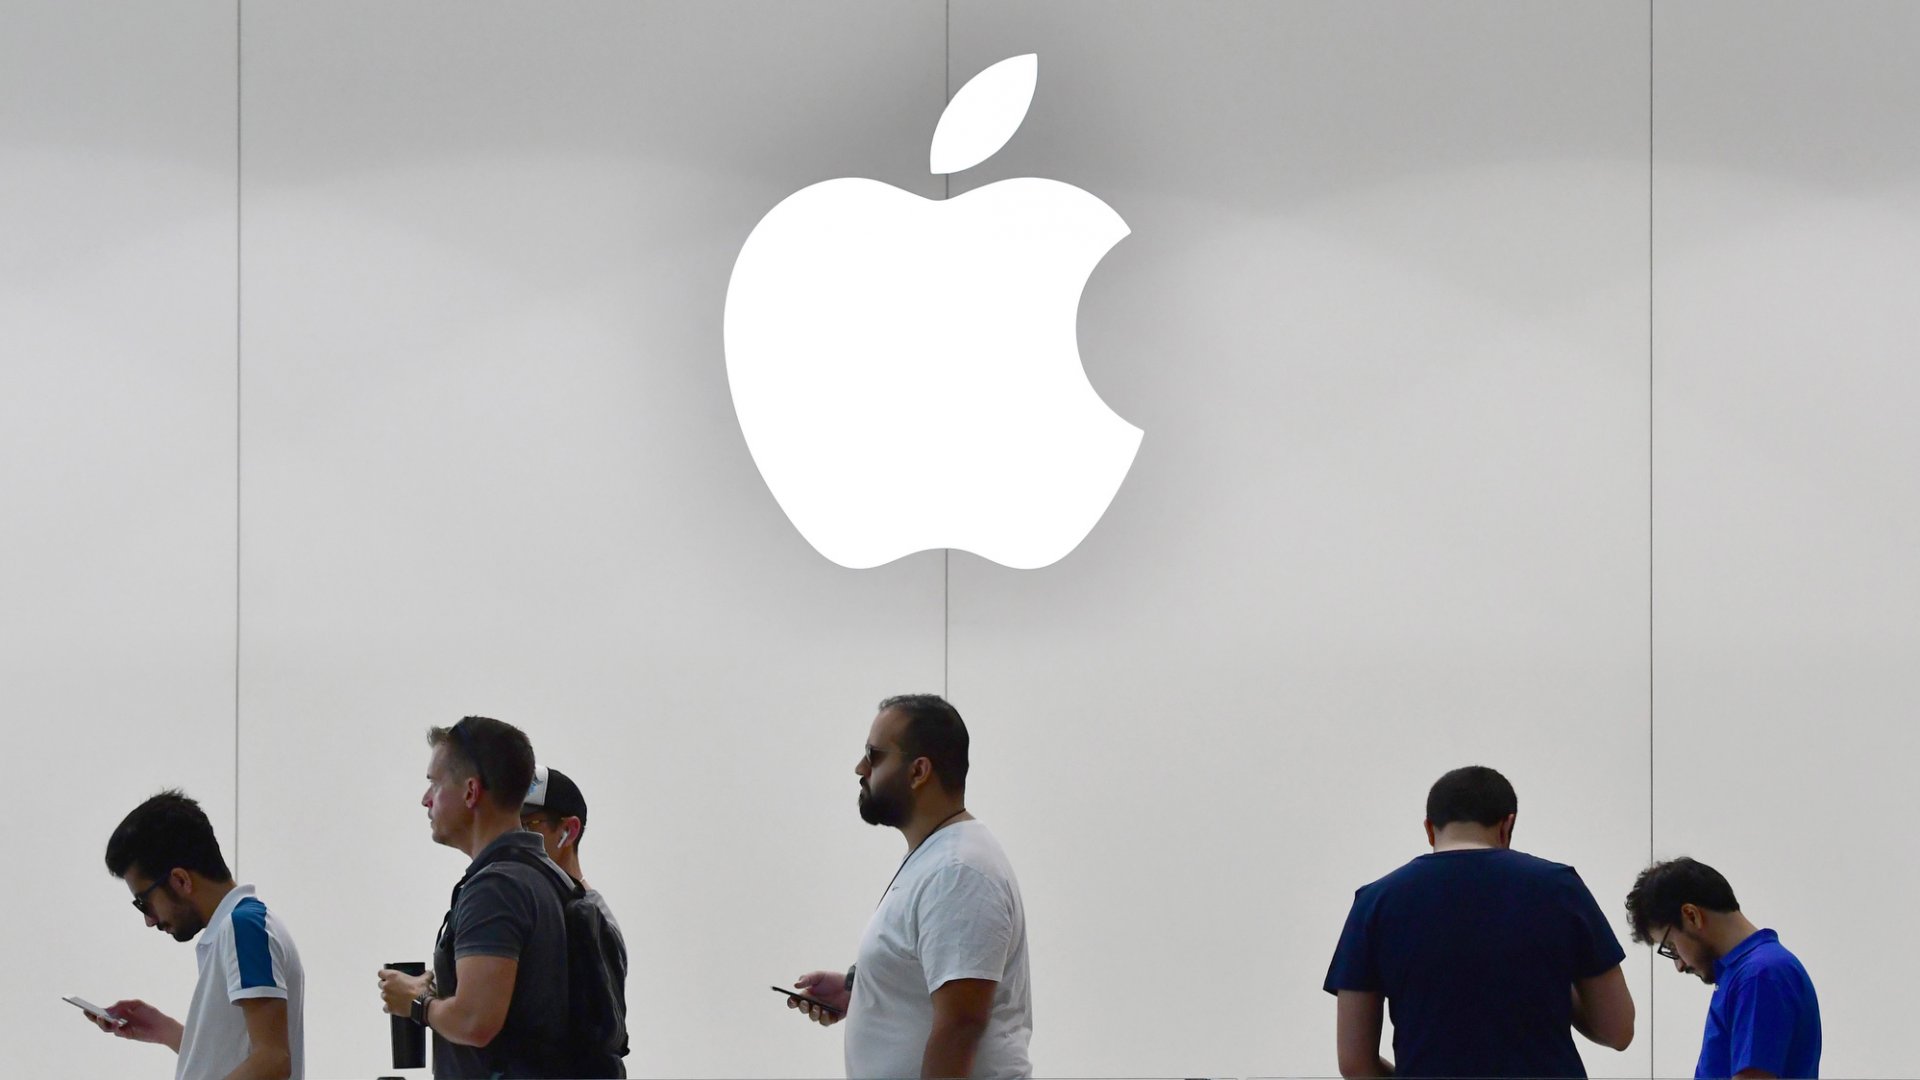 Інженер Apple розповів про таємну співпрацю компанії з урядом США